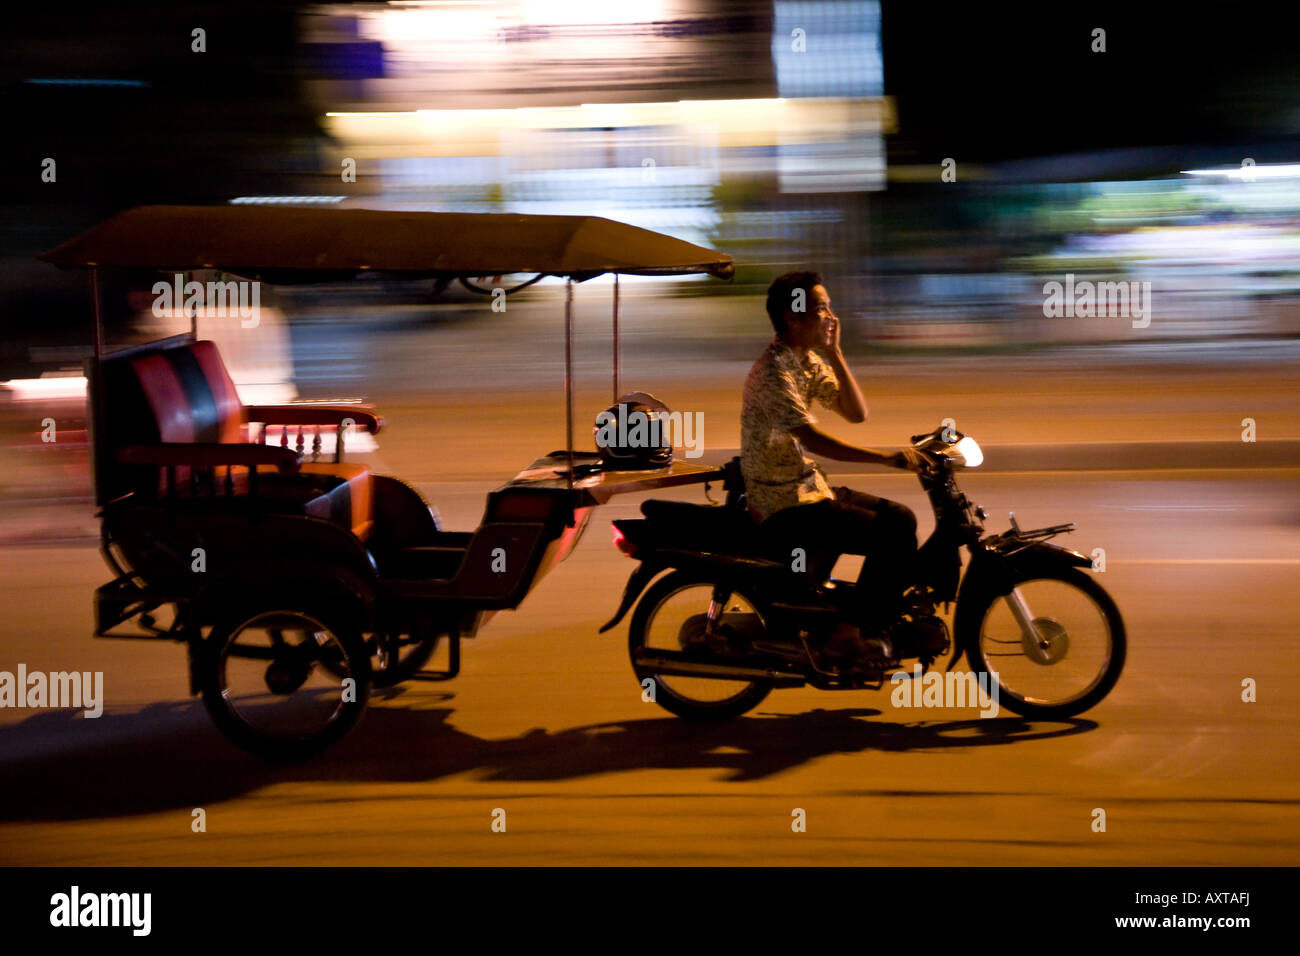 Des vitesses par un conducteur de pousse-pousse dans la nuit tout en discutant sur un téléphone cellulaire - un signe que le Cambodge est en train de moderniser Banque D'Images